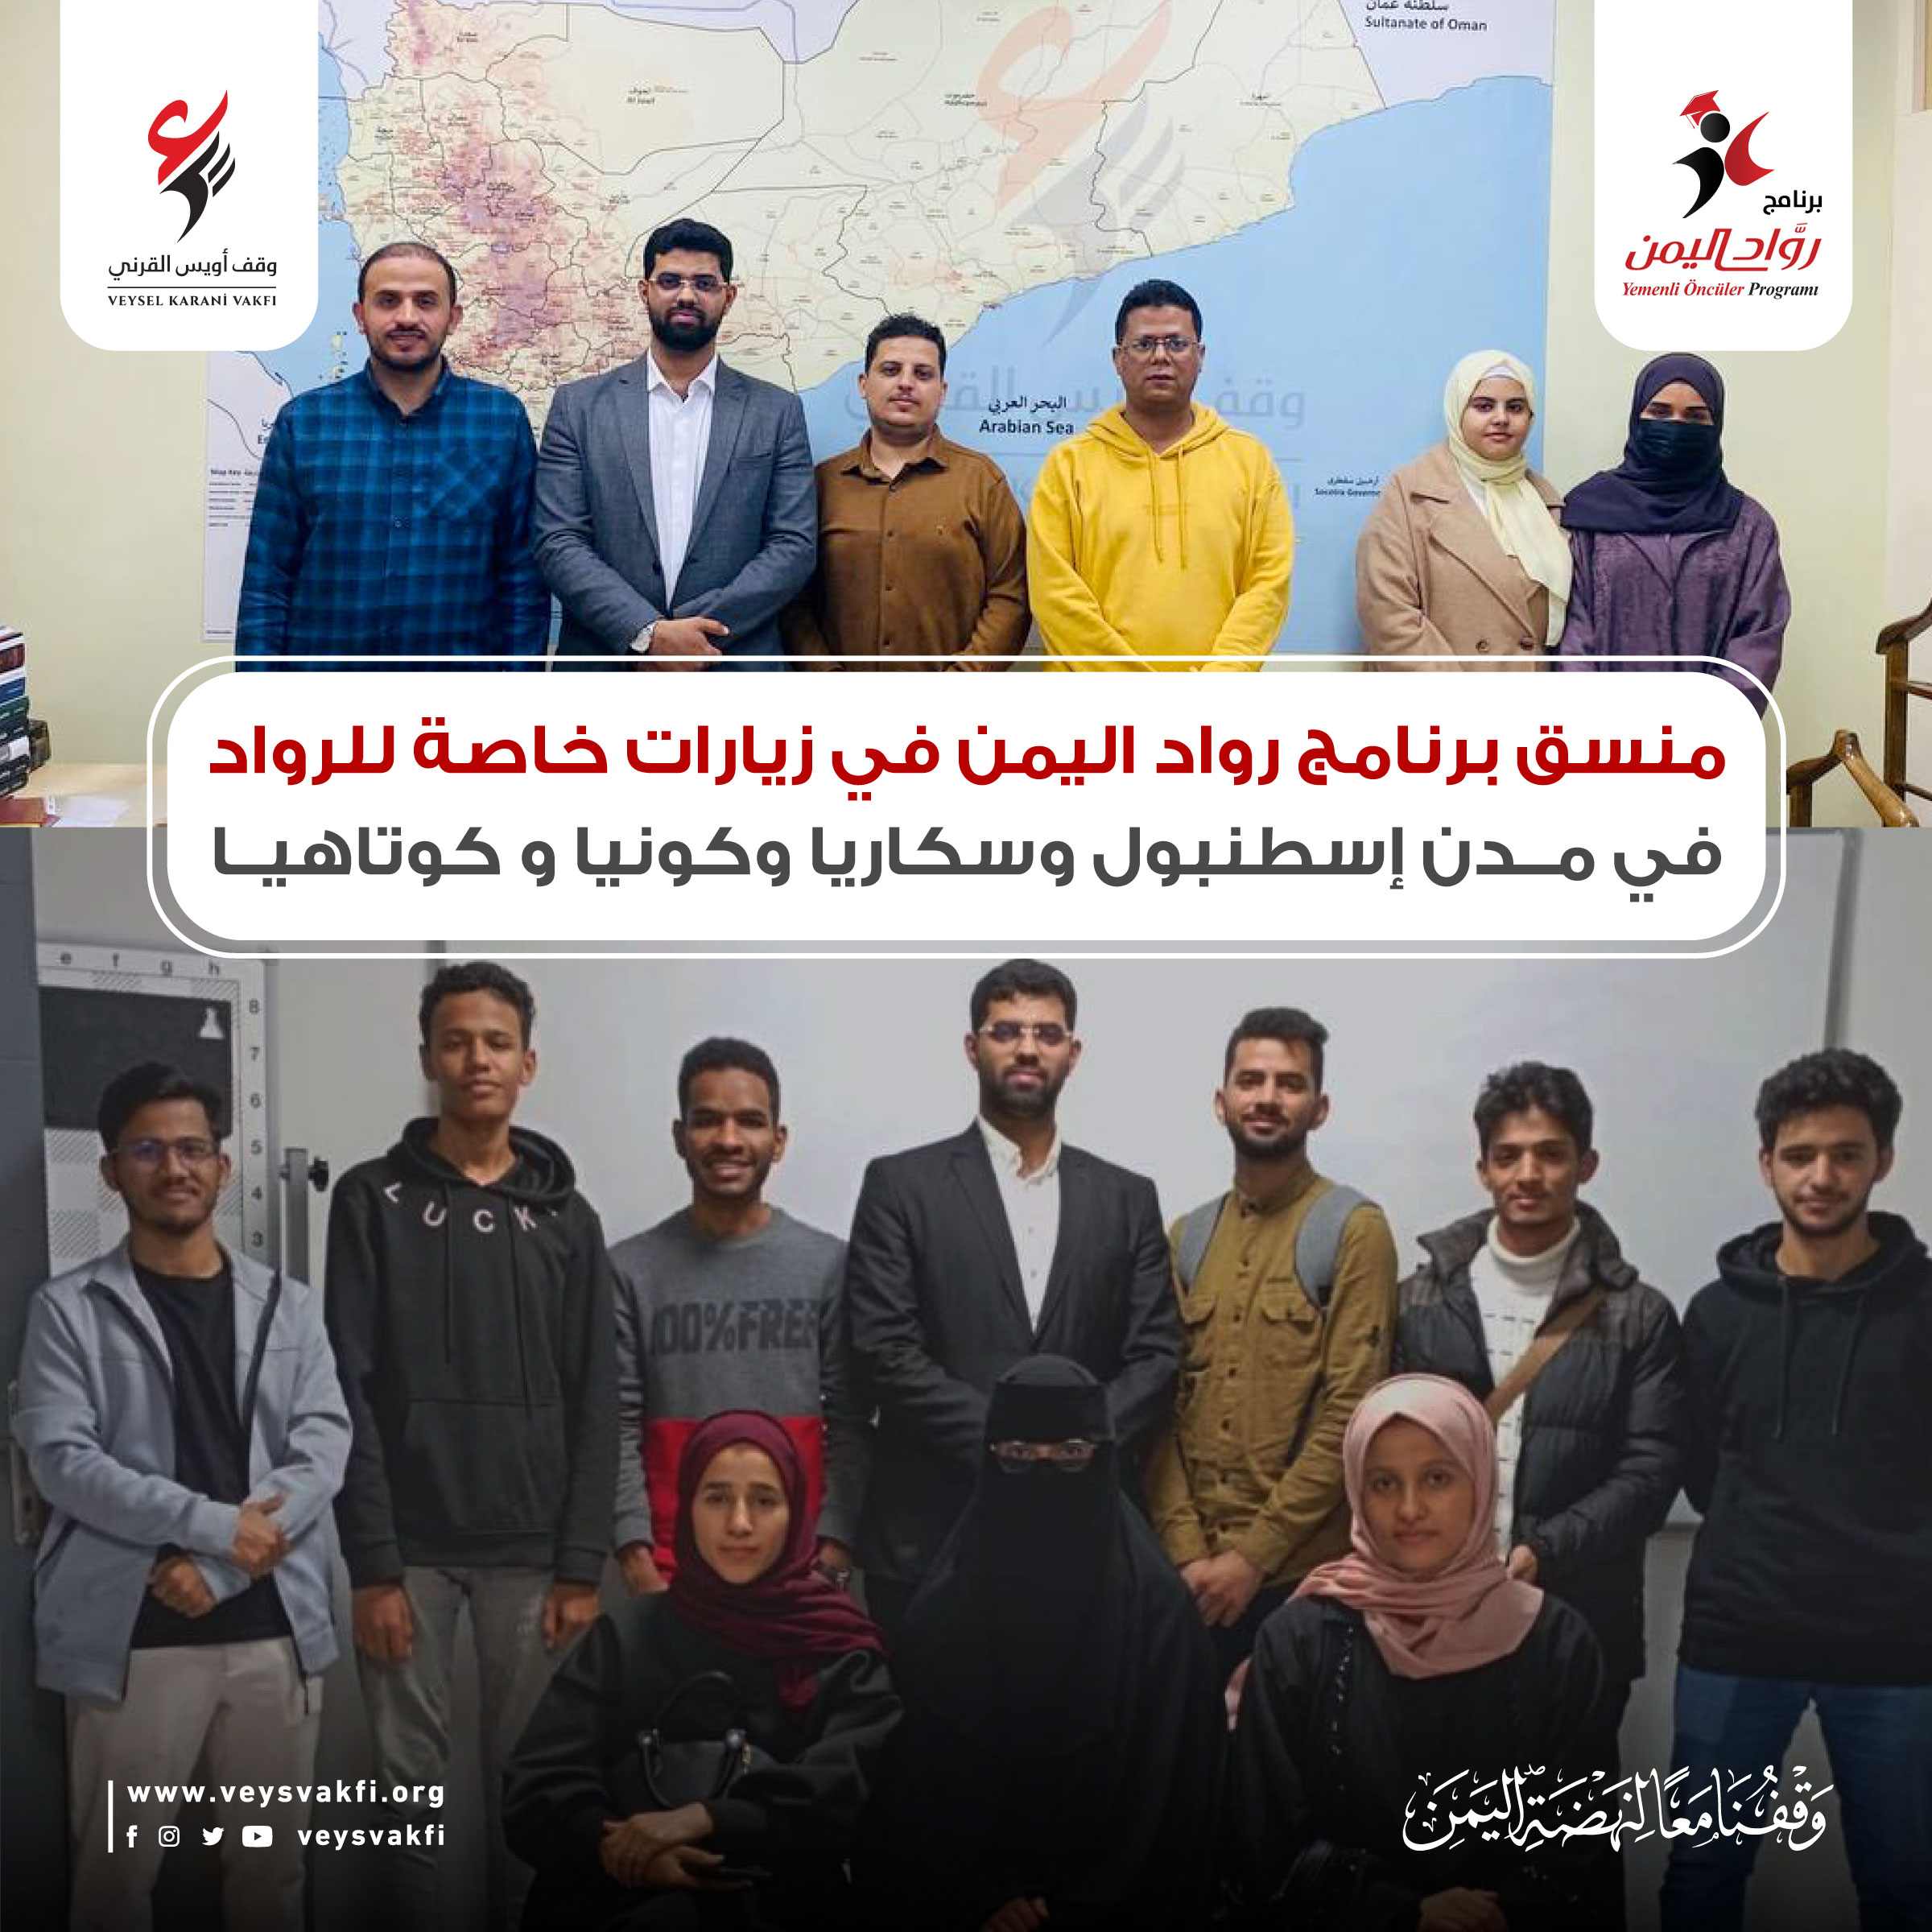 منسق برنامج رواد اليمن في زيارات خاصة للرواد في مدن إسطنبول وسكاريا وكونيا و كوتاهيا